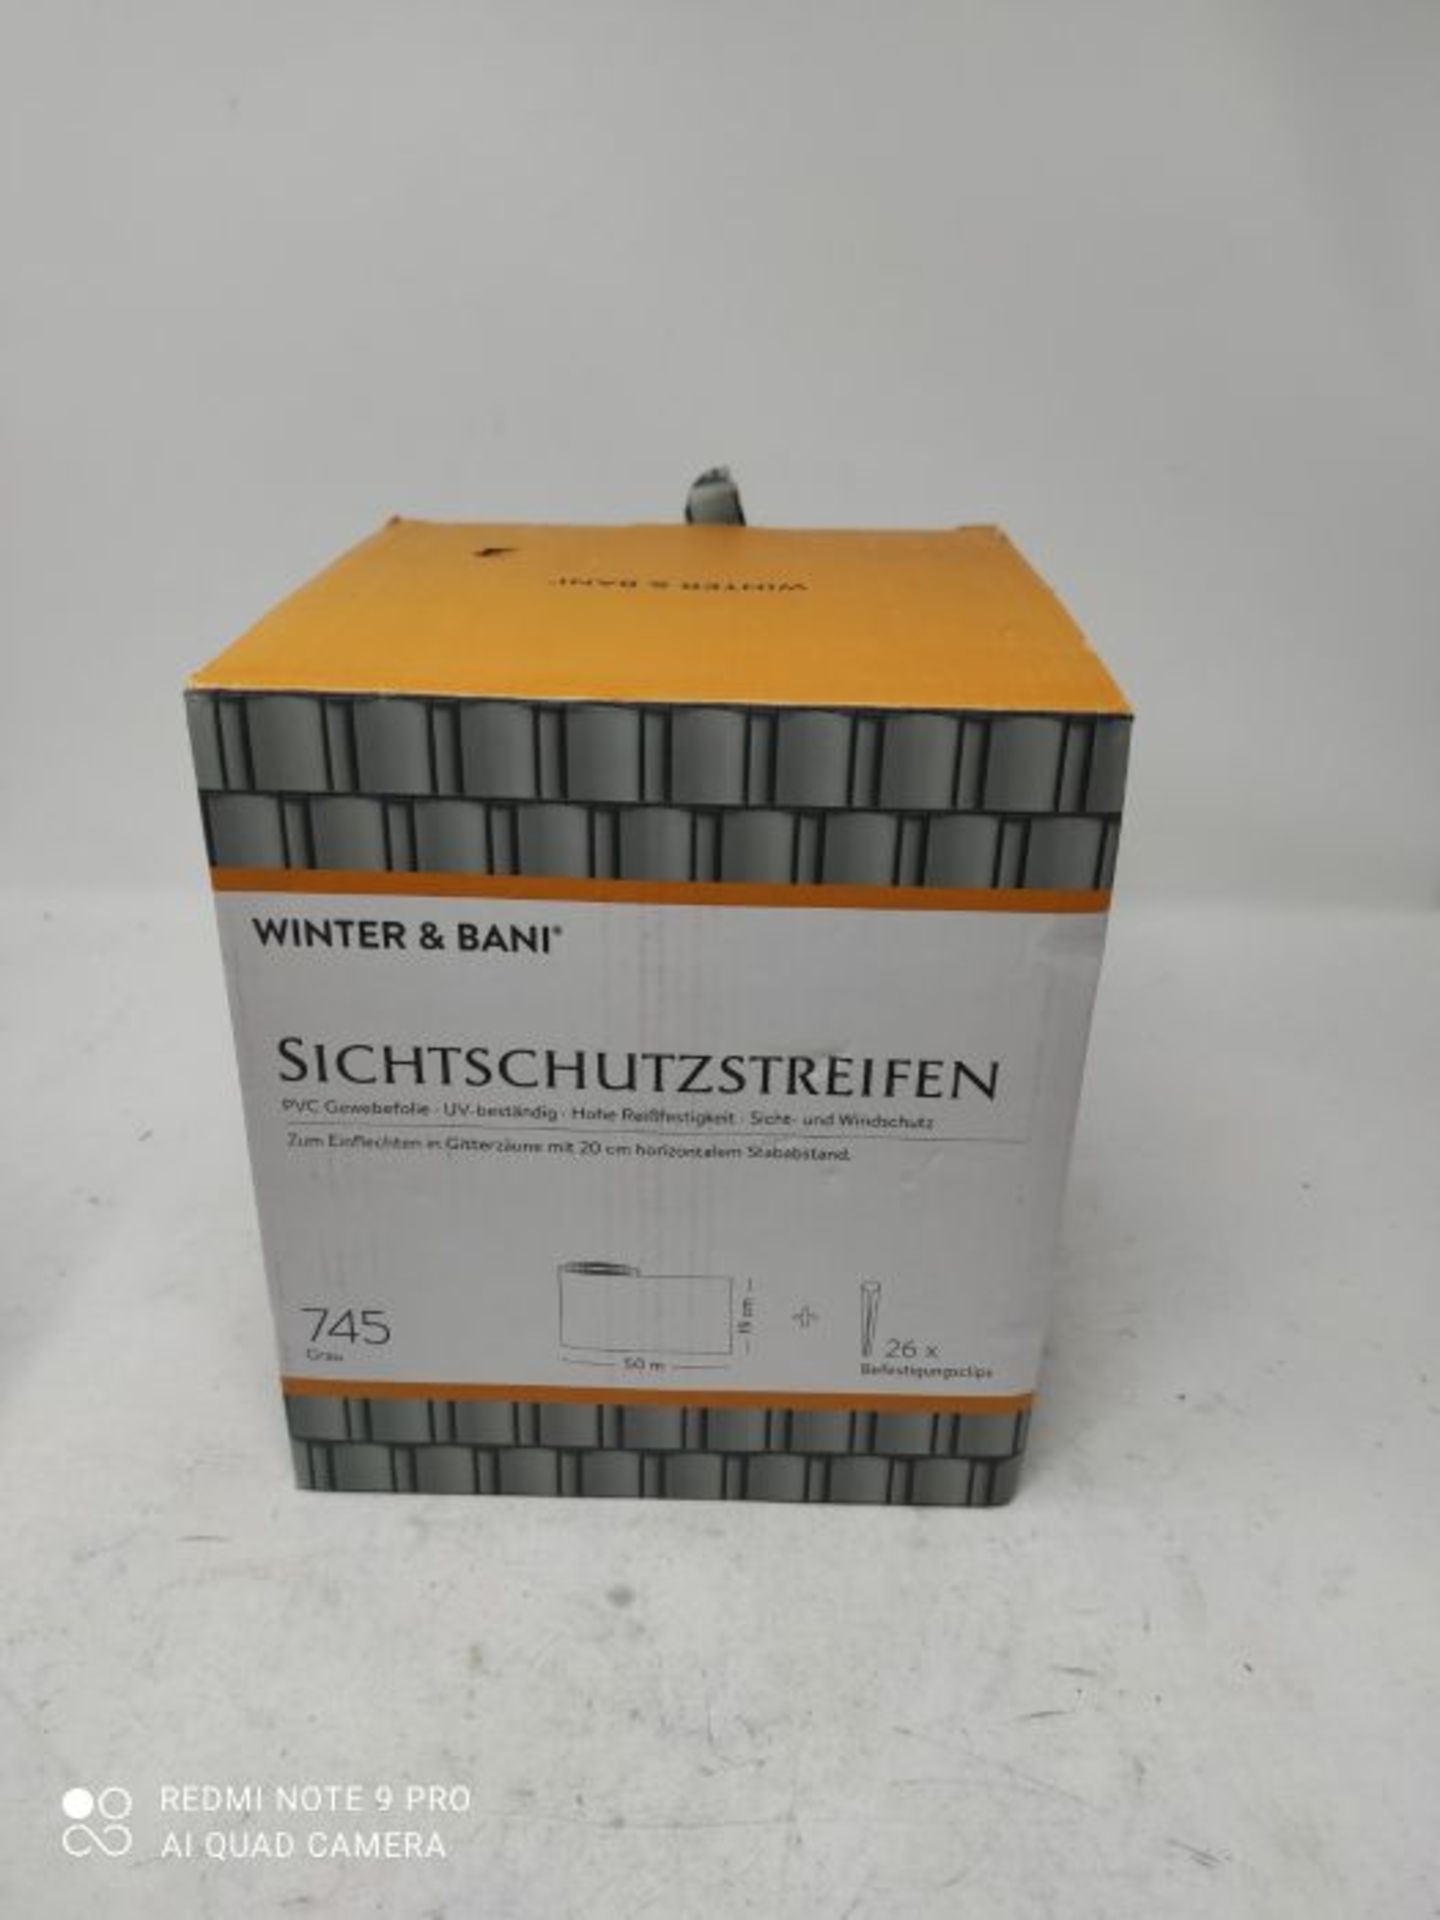 Winter & Bani Sichtschutzstreifen 50 Meter x 19 cm inkl. 26 Clips, Diverse Farben (50 - Image 2 of 2